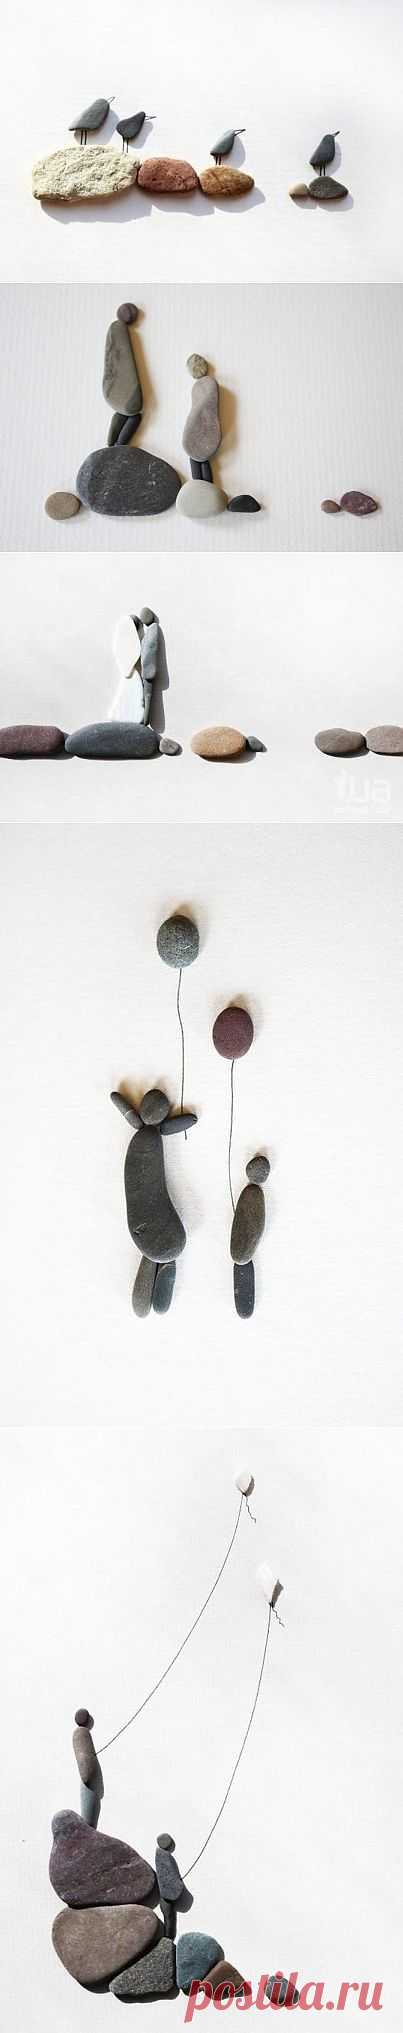 Pebble Art - картины из камешков.